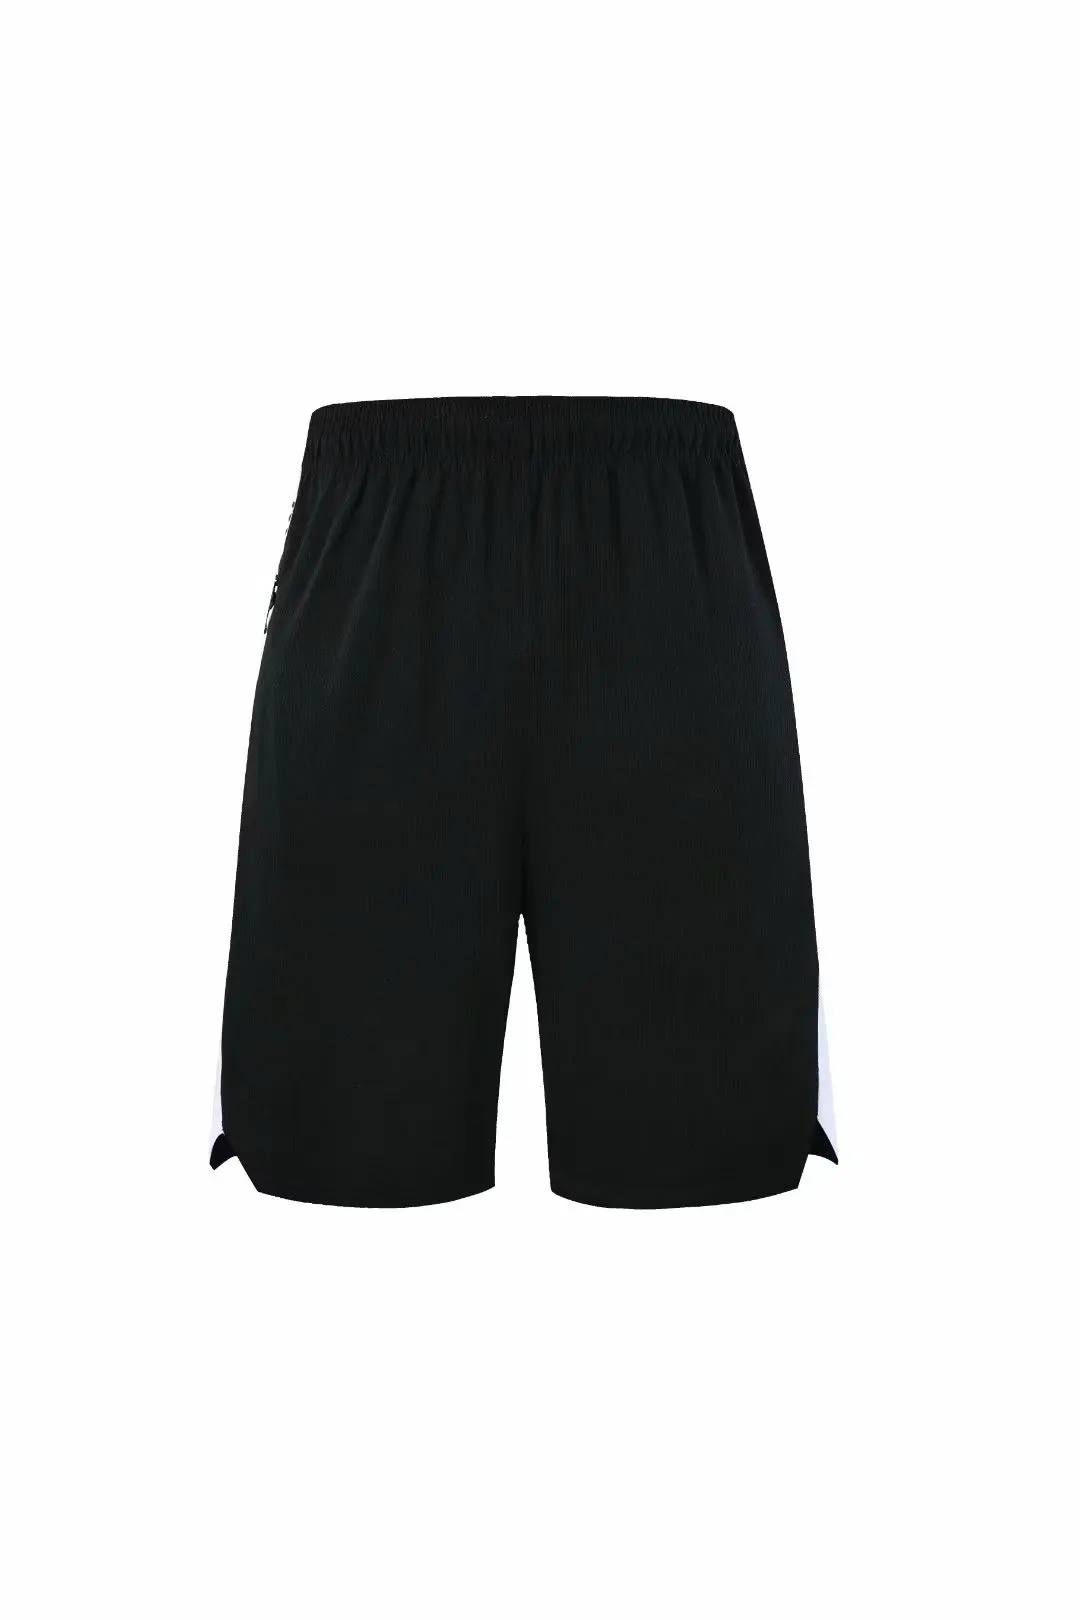 Дышащие тренировочные плотные баскетбольные шорты для мужчин пляжные спортивные шорты для мужчин с карманом на молнии для бега фитнес быстросохнущие шорты набор